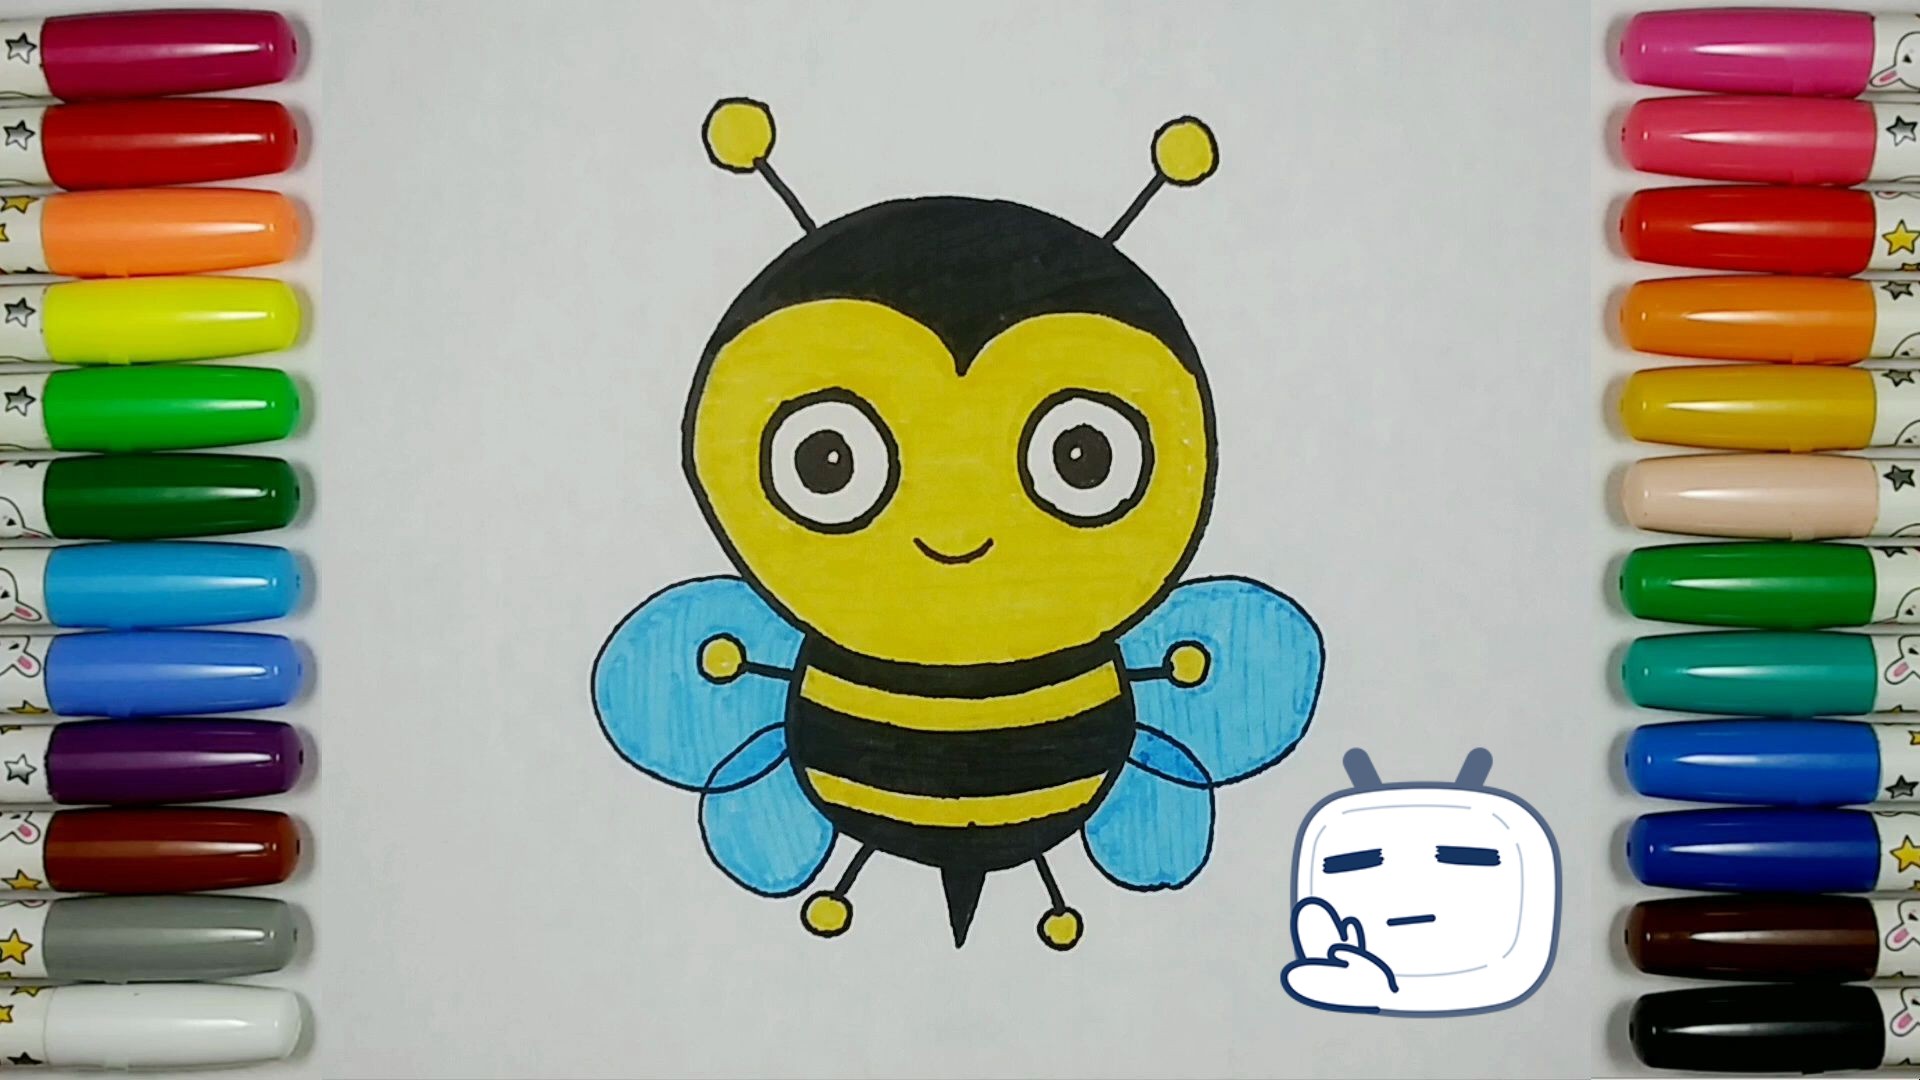 【儿童简笔画教程】画一个可爱的小蜜蜂:勤劳的小工匠!